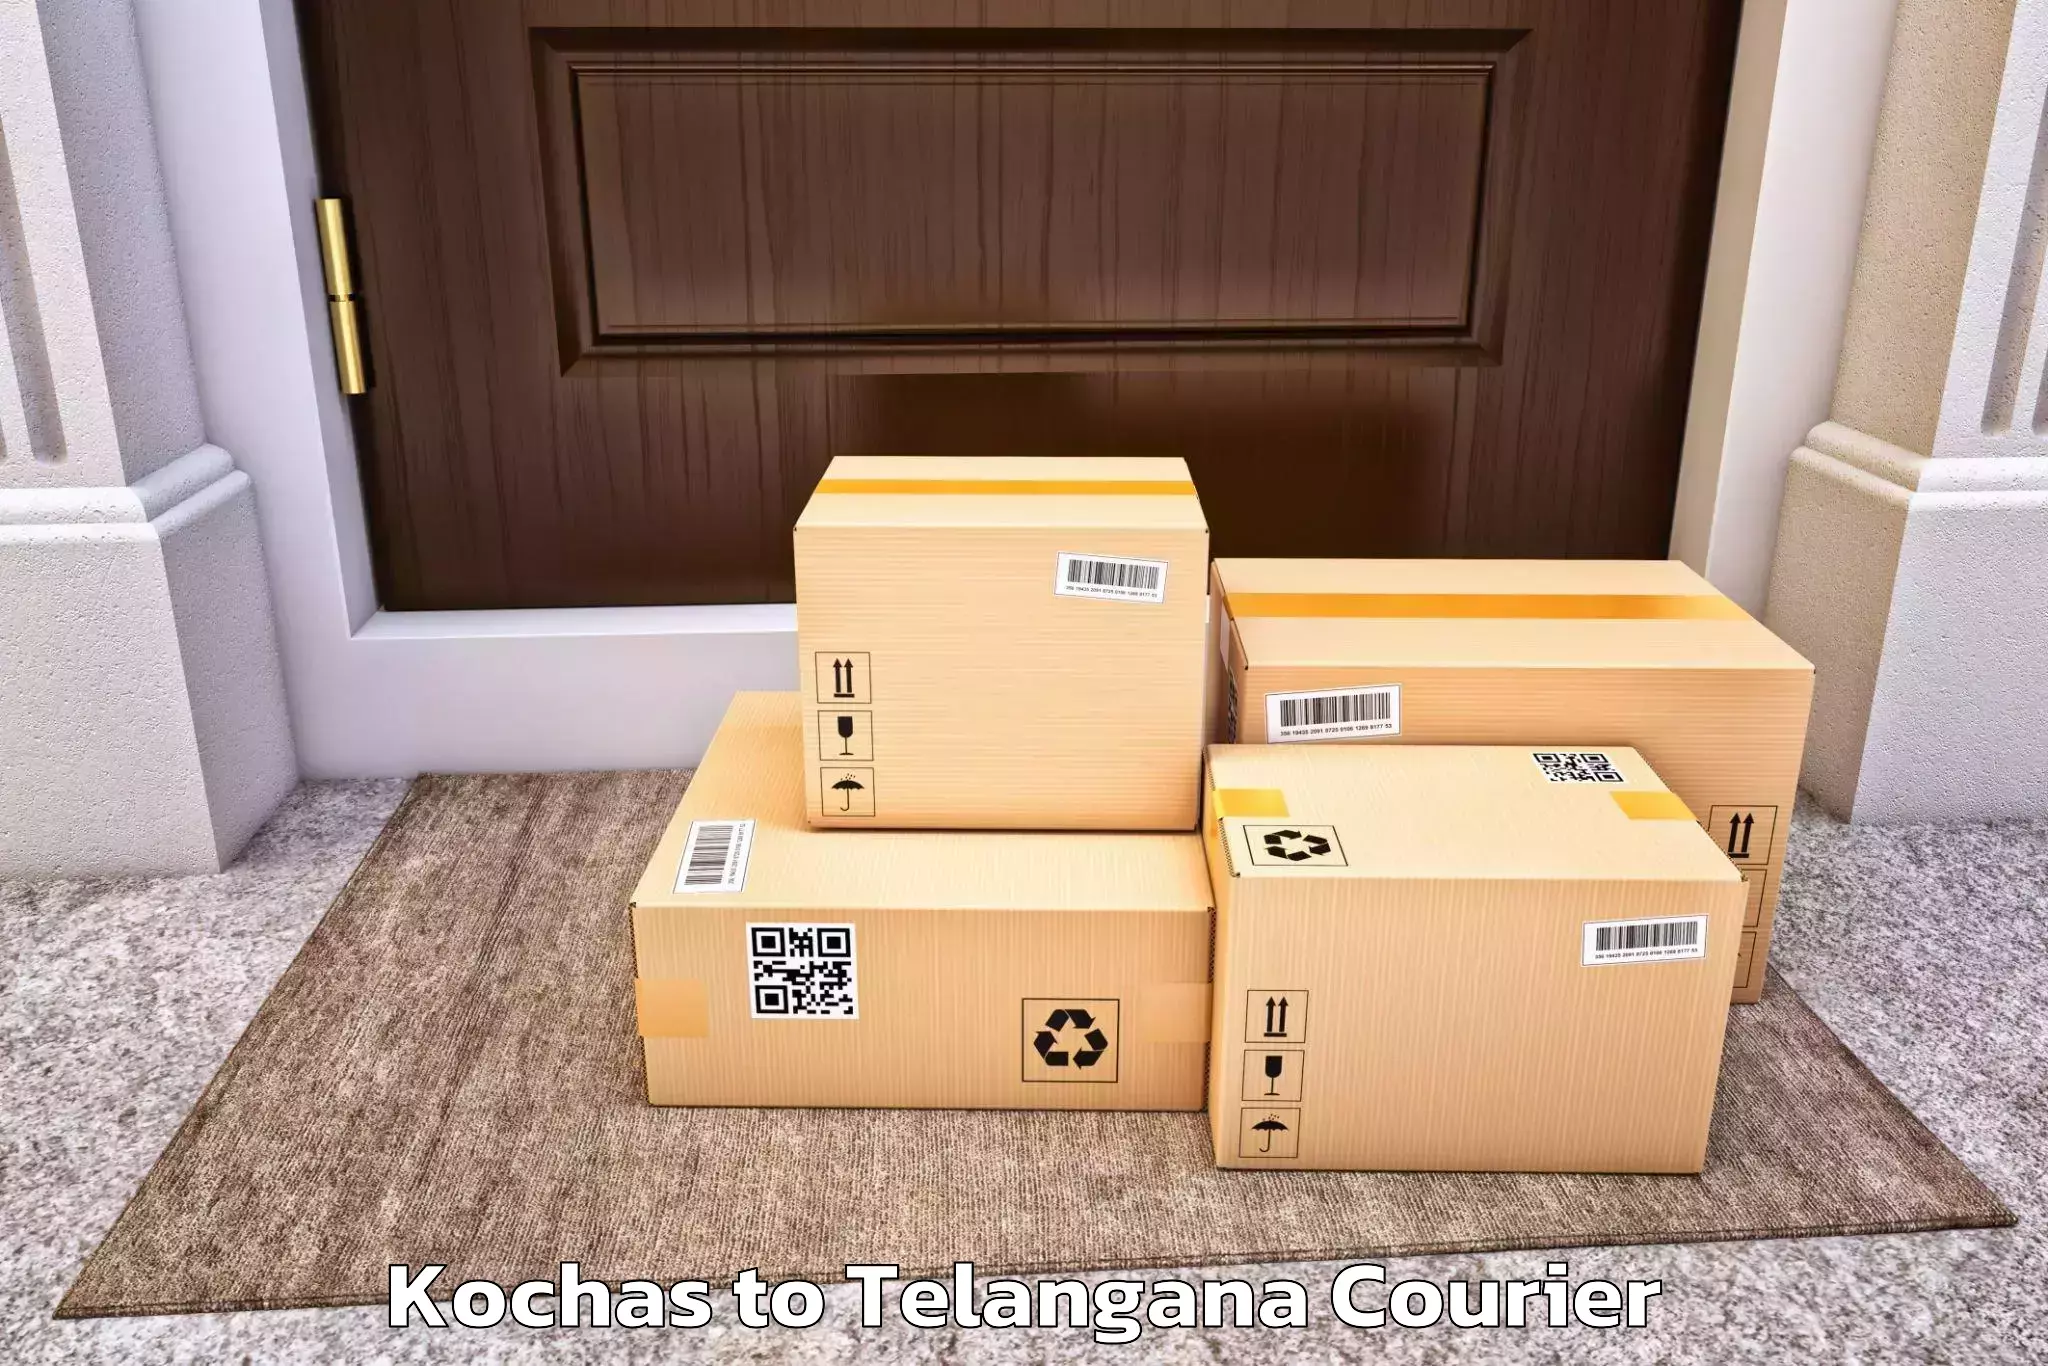 Professional furniture transport Kochas to Tiryani